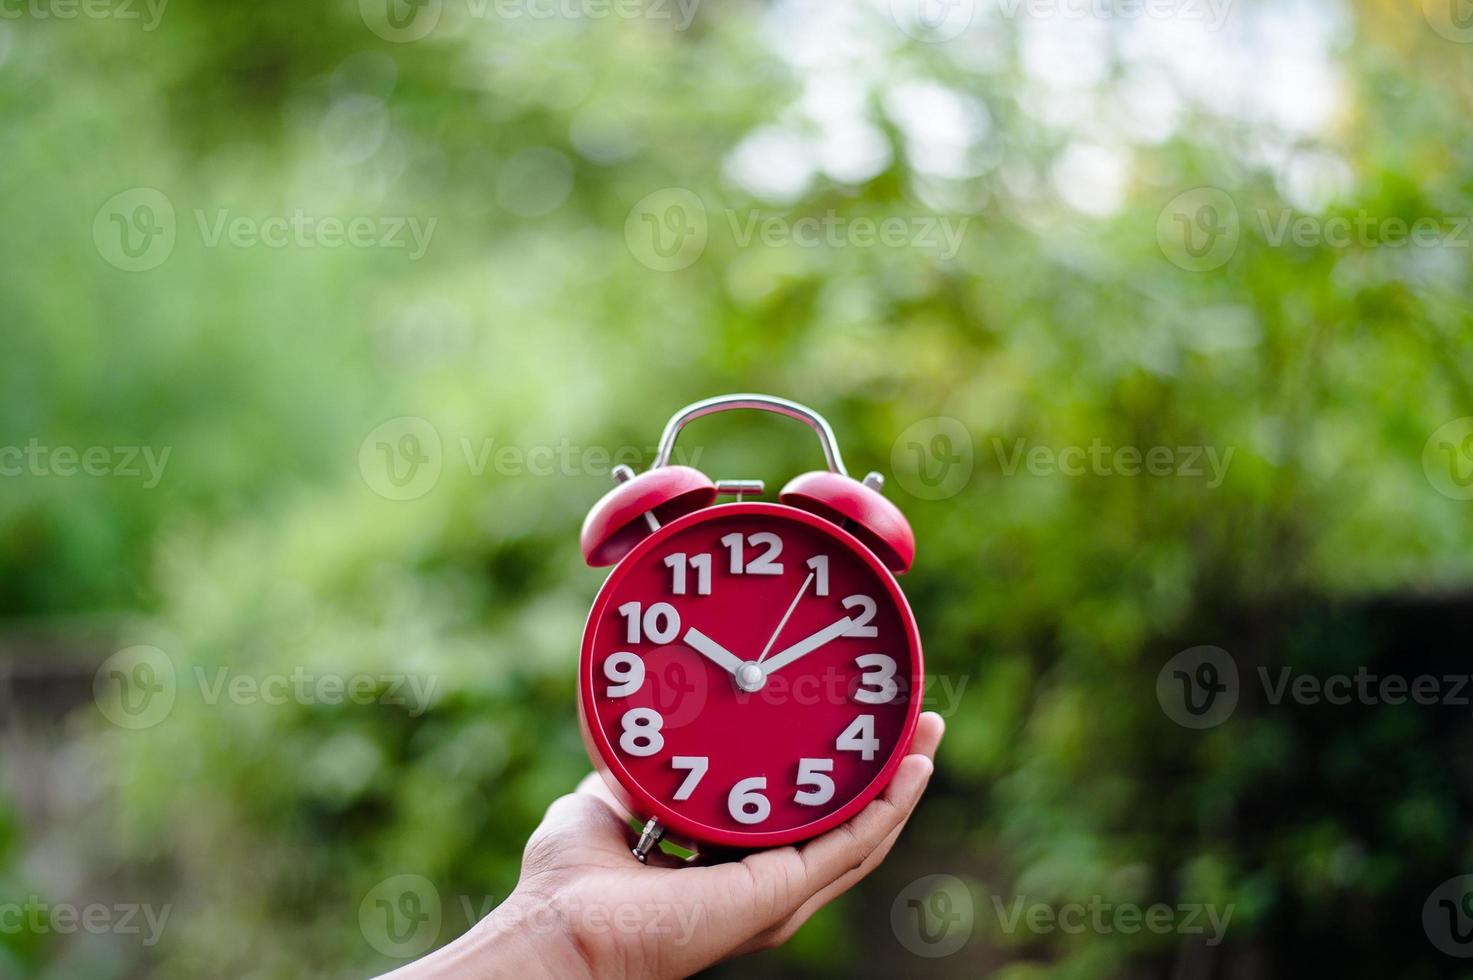 vista superior do conceito plano plano criativo da mão de um homem segurando um despertador vermelho antigo em um fundo verde brilhante com turquesa, com o menor espaço de cópia disponível. foto